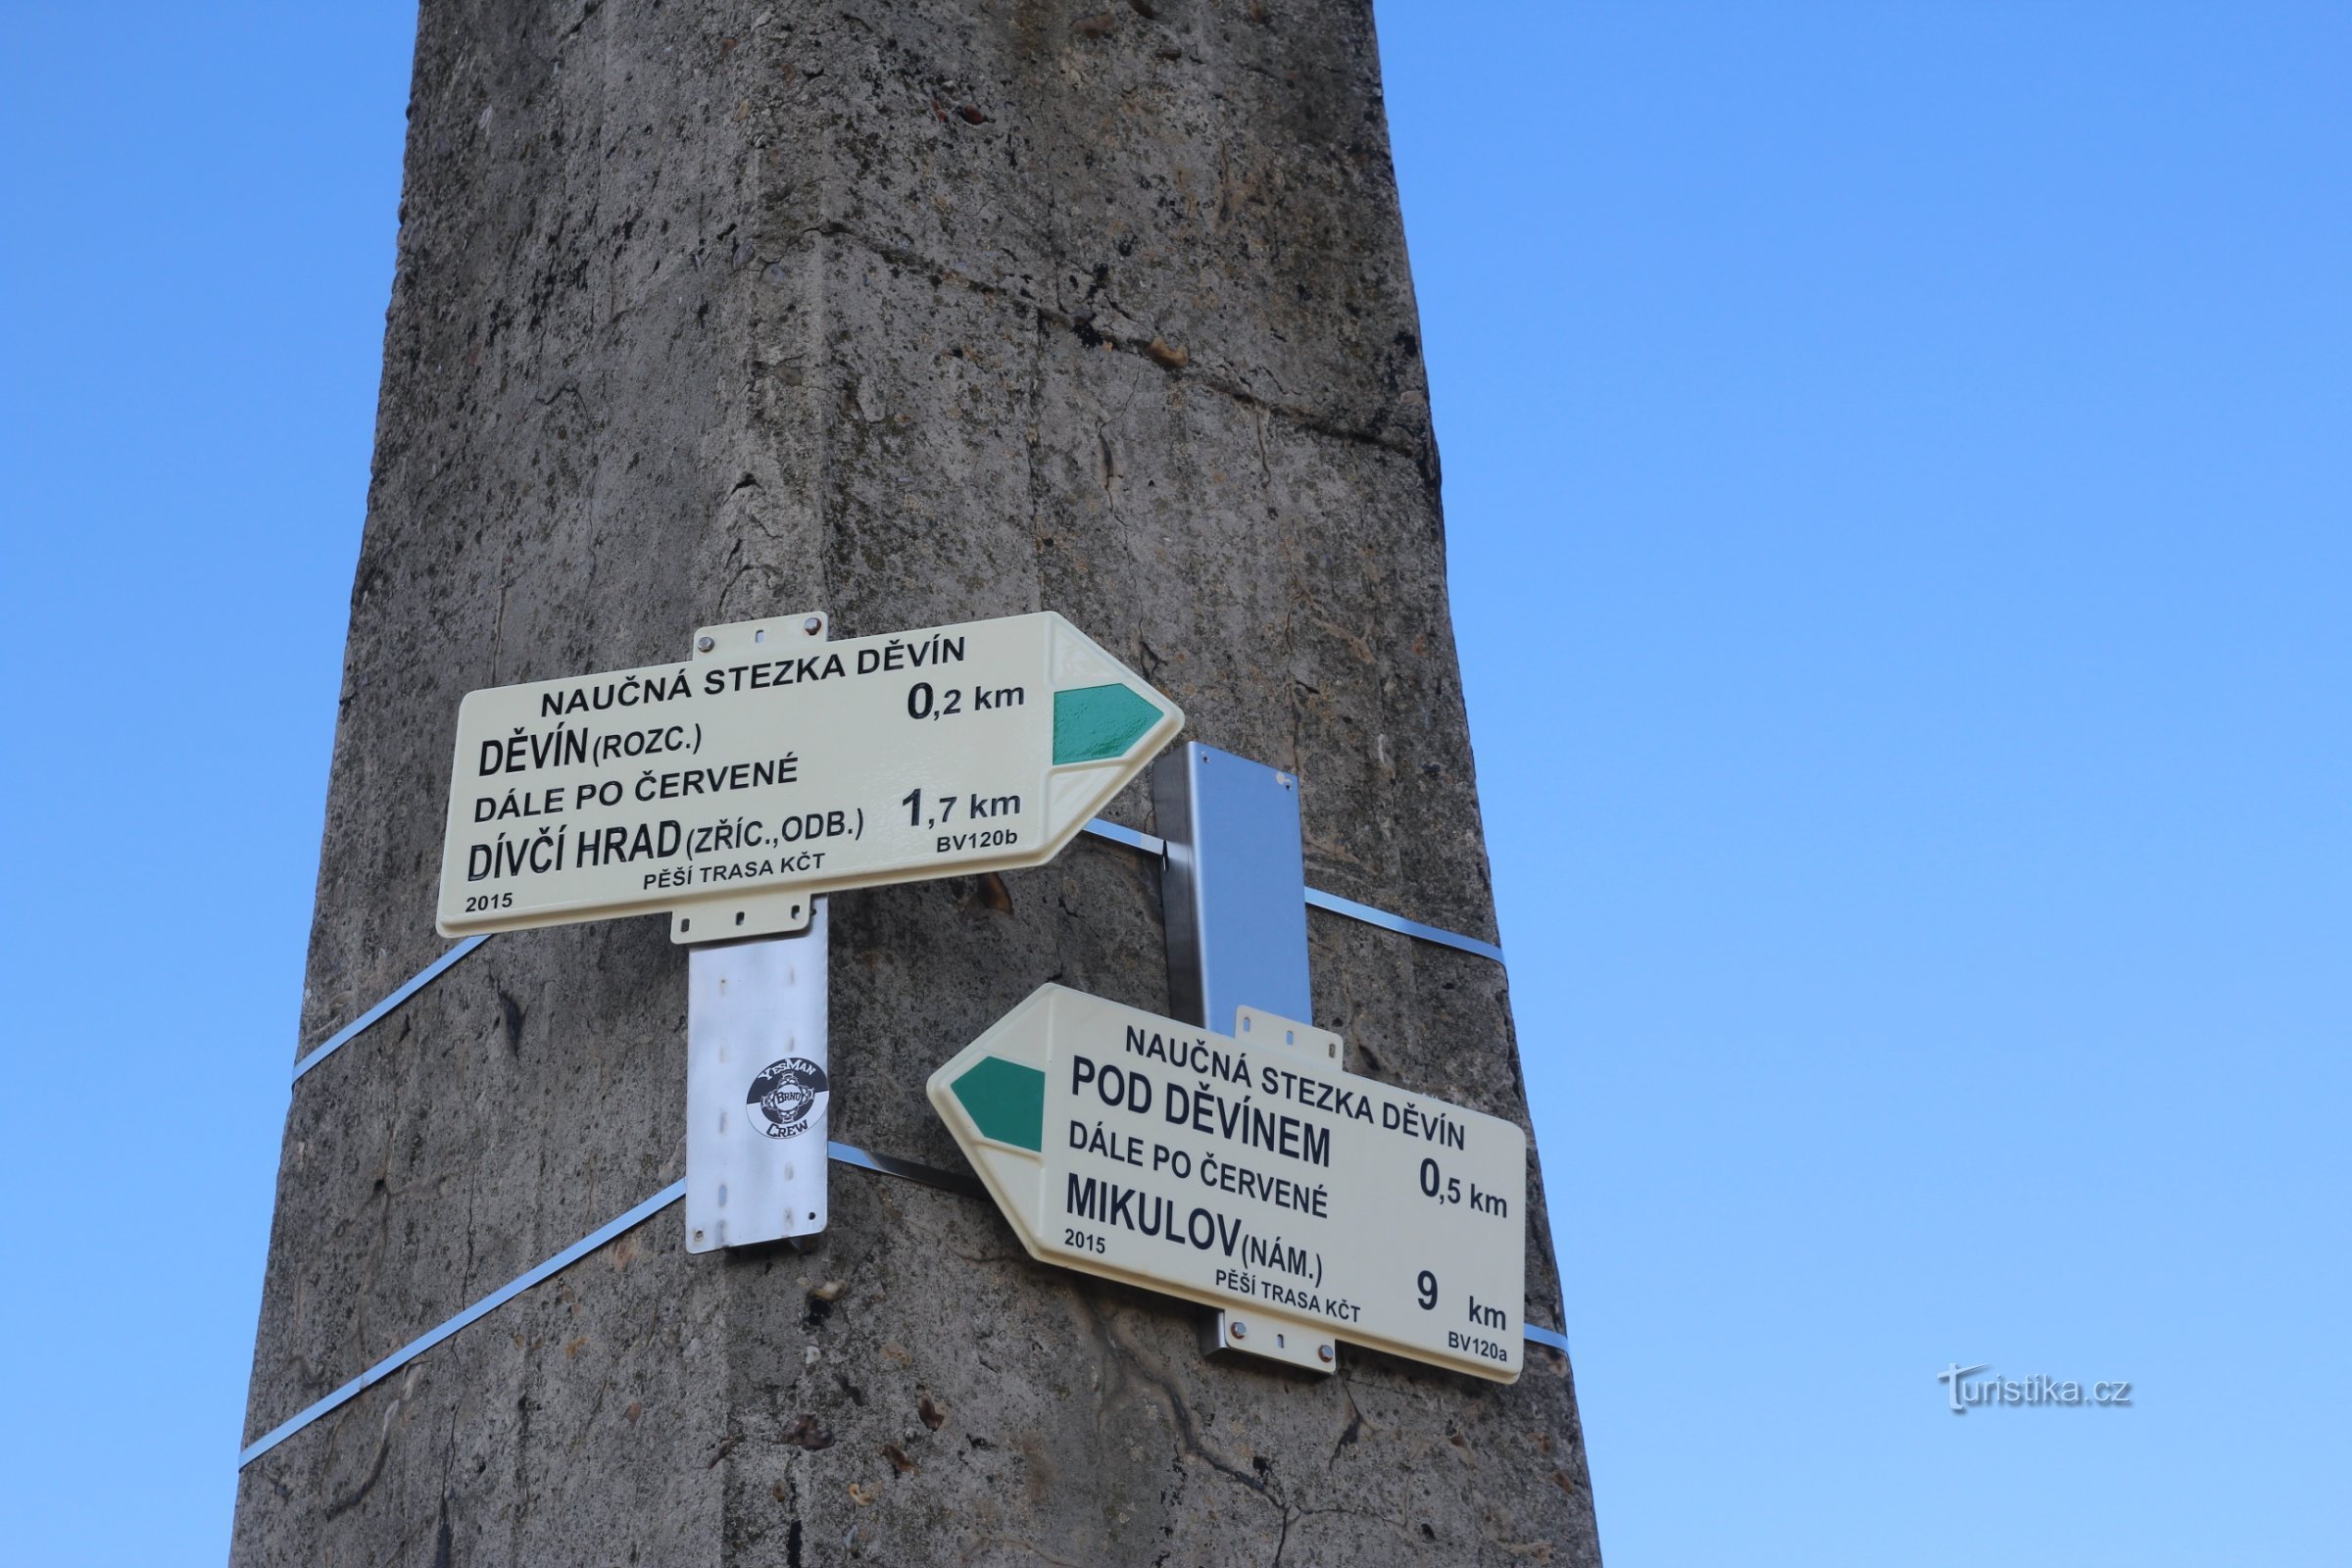 Un poste indicador turístico está unido al pilón de hormigón del punto trigonométrico.